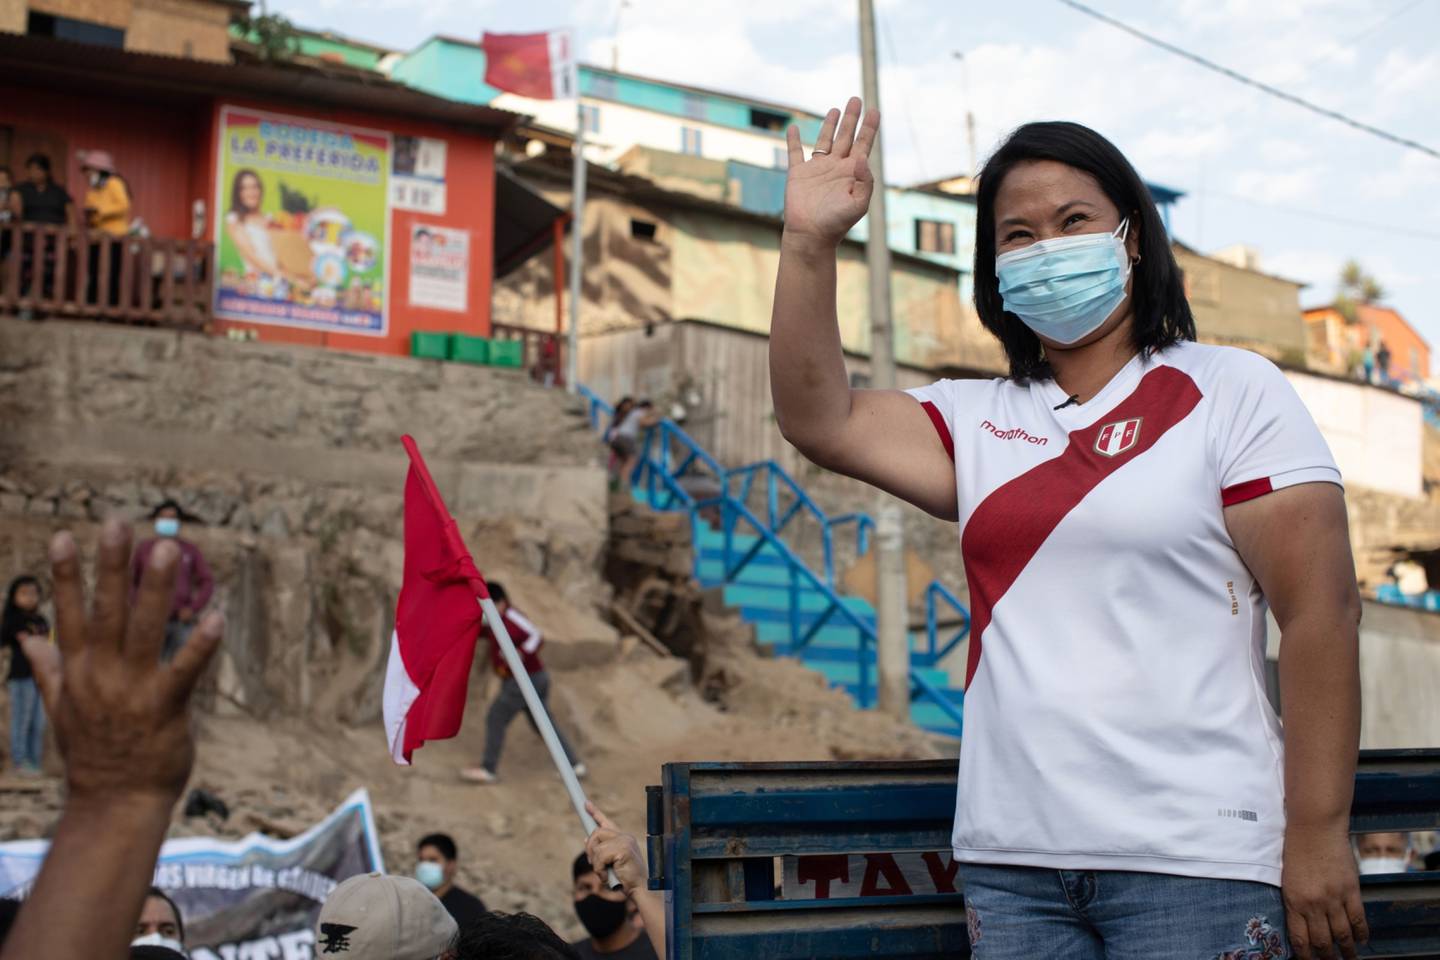 La excandidata saluda a sus seguidores durante un mitin de campaña en Lima el 10 de mayo.dfd